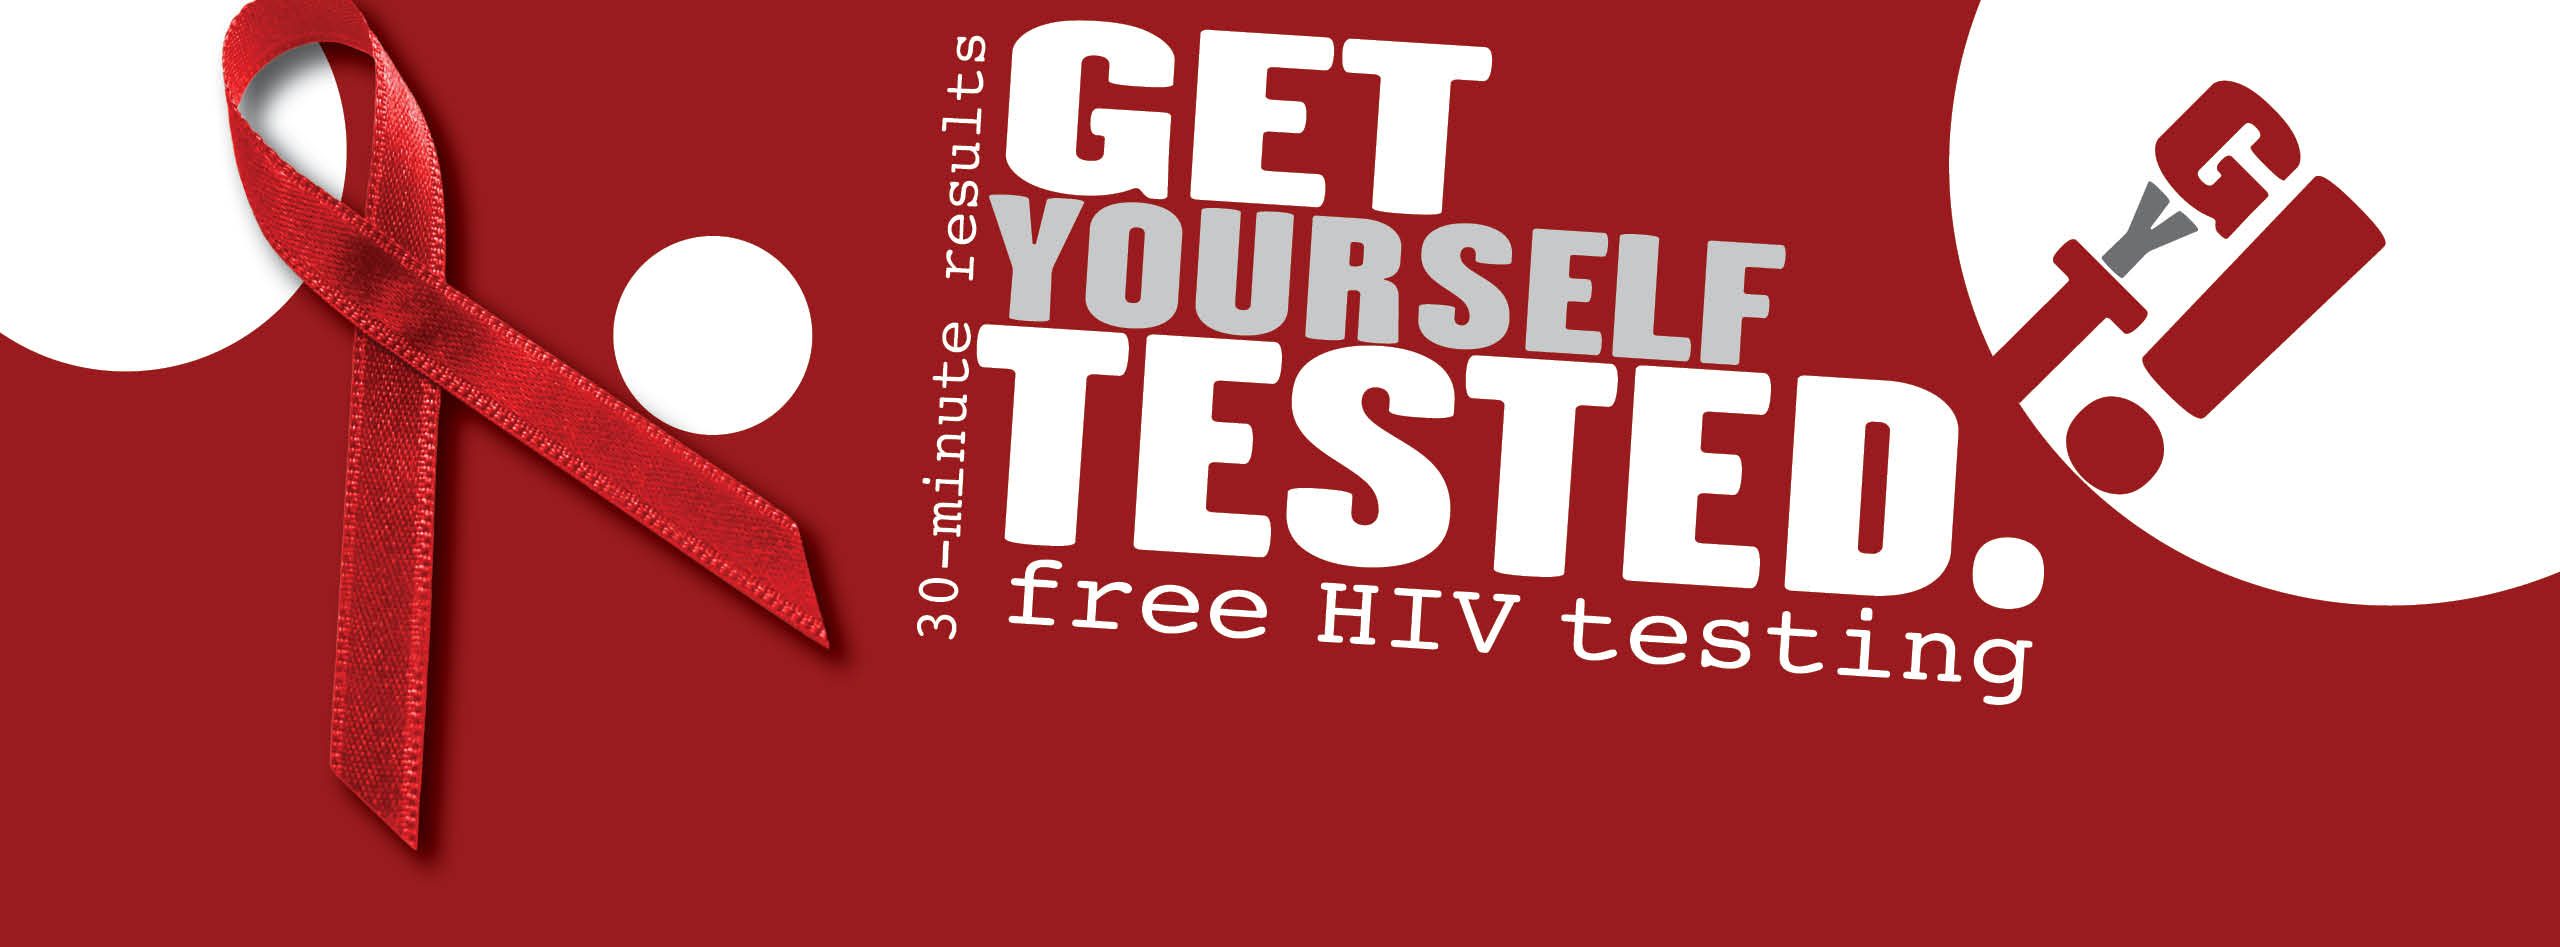 HIV TESTING